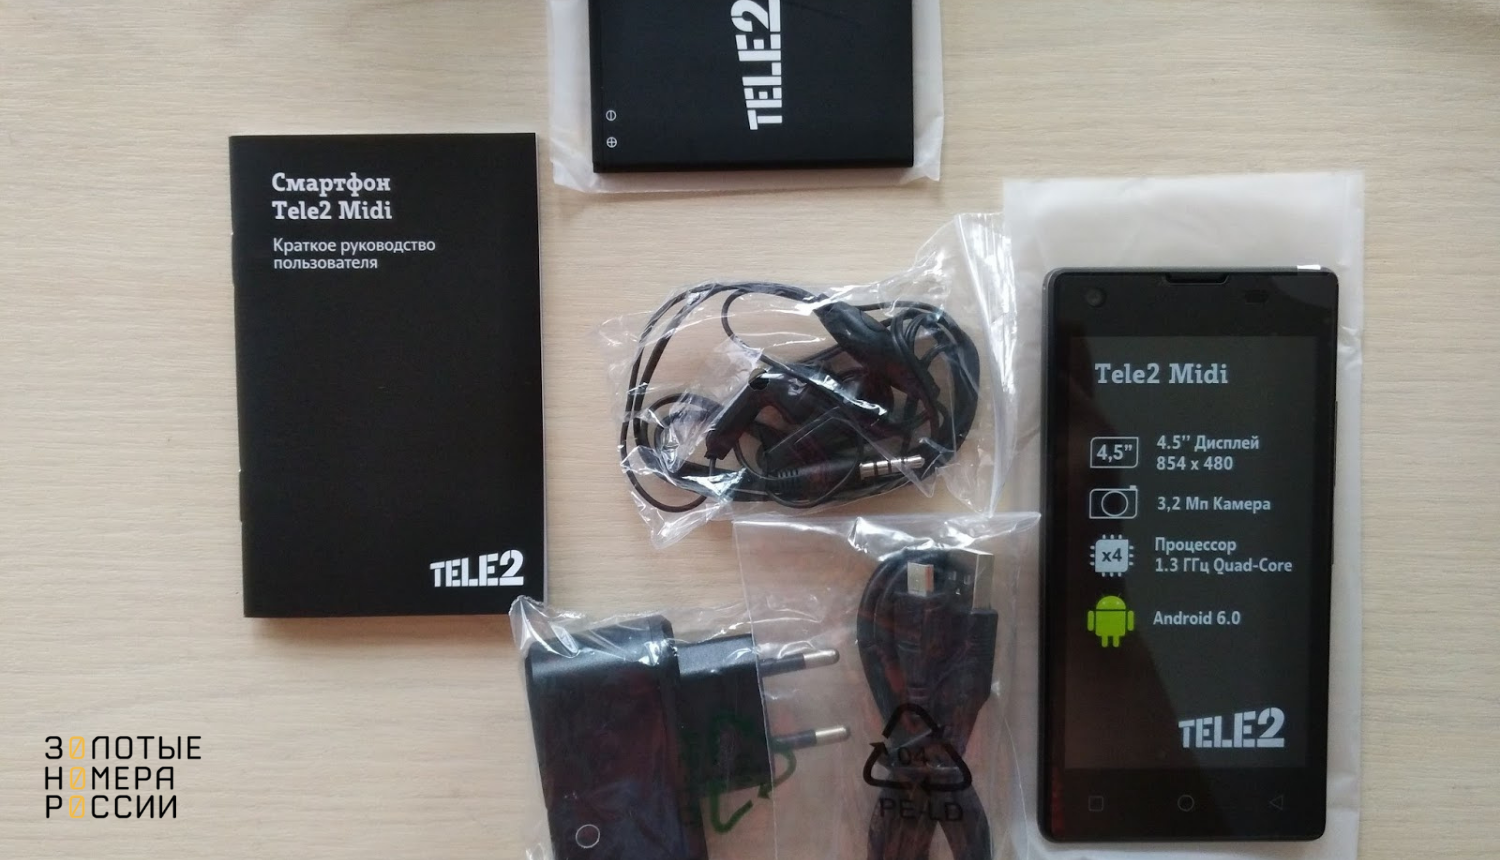 Брендированный смартфон Tele2 Midi